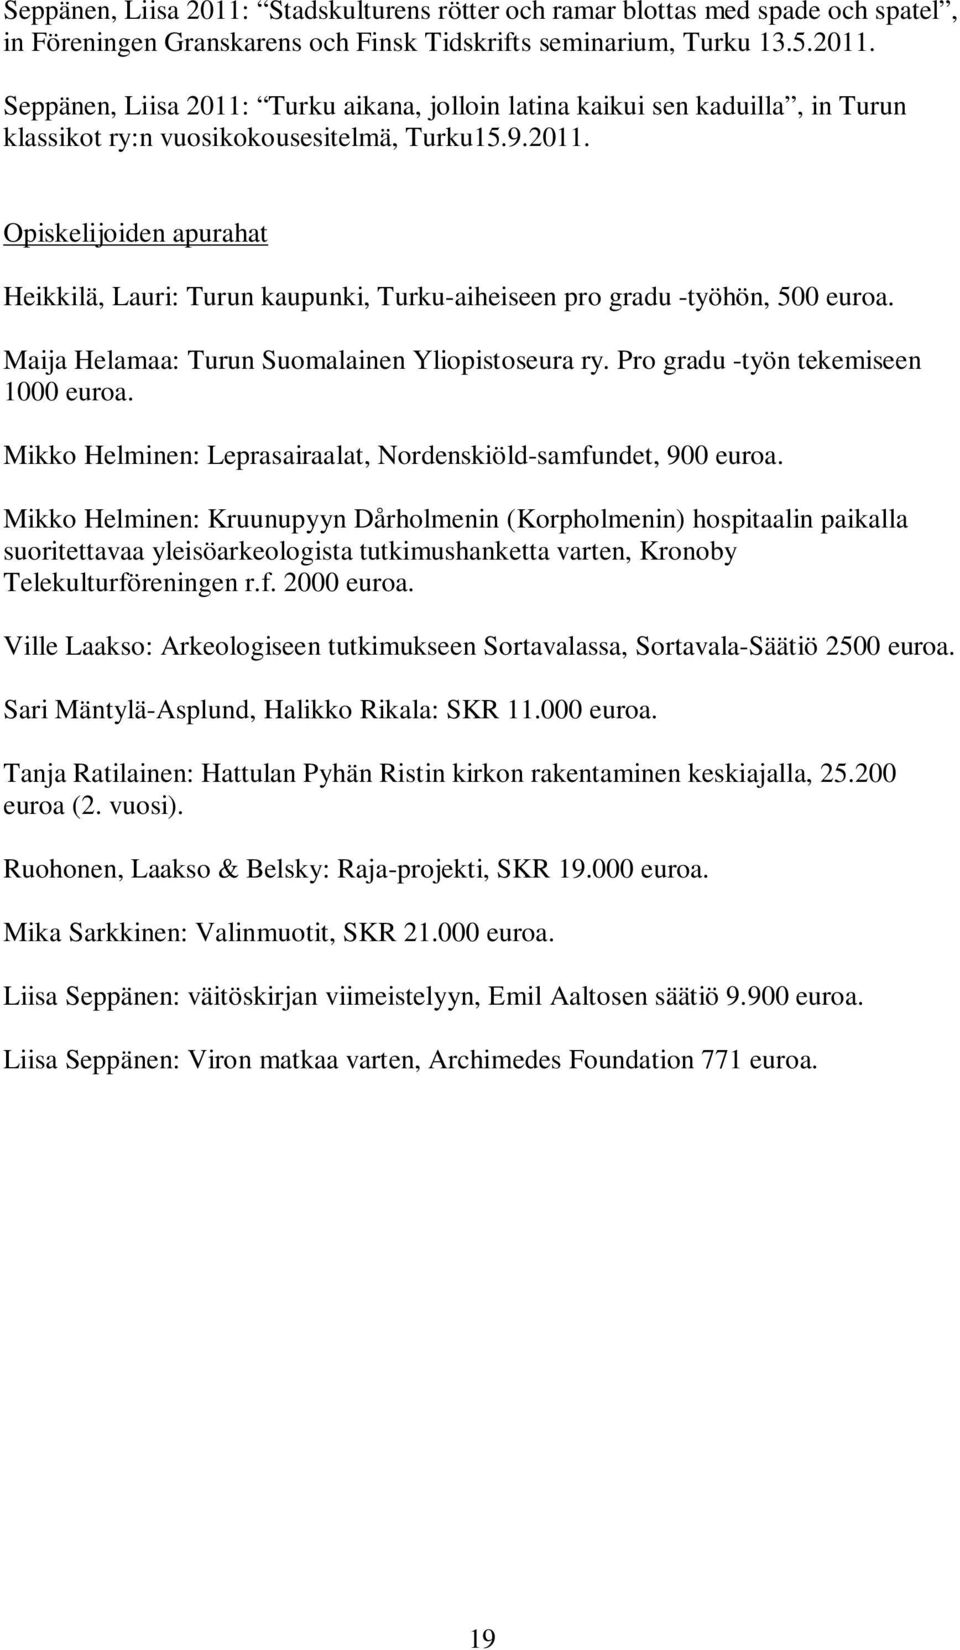 Pro gradu -työn tekemiseen 1000 euroa. Mikko Helminen: Leprasairaalat, Nordenskiöld-samfundet, 900 euroa.